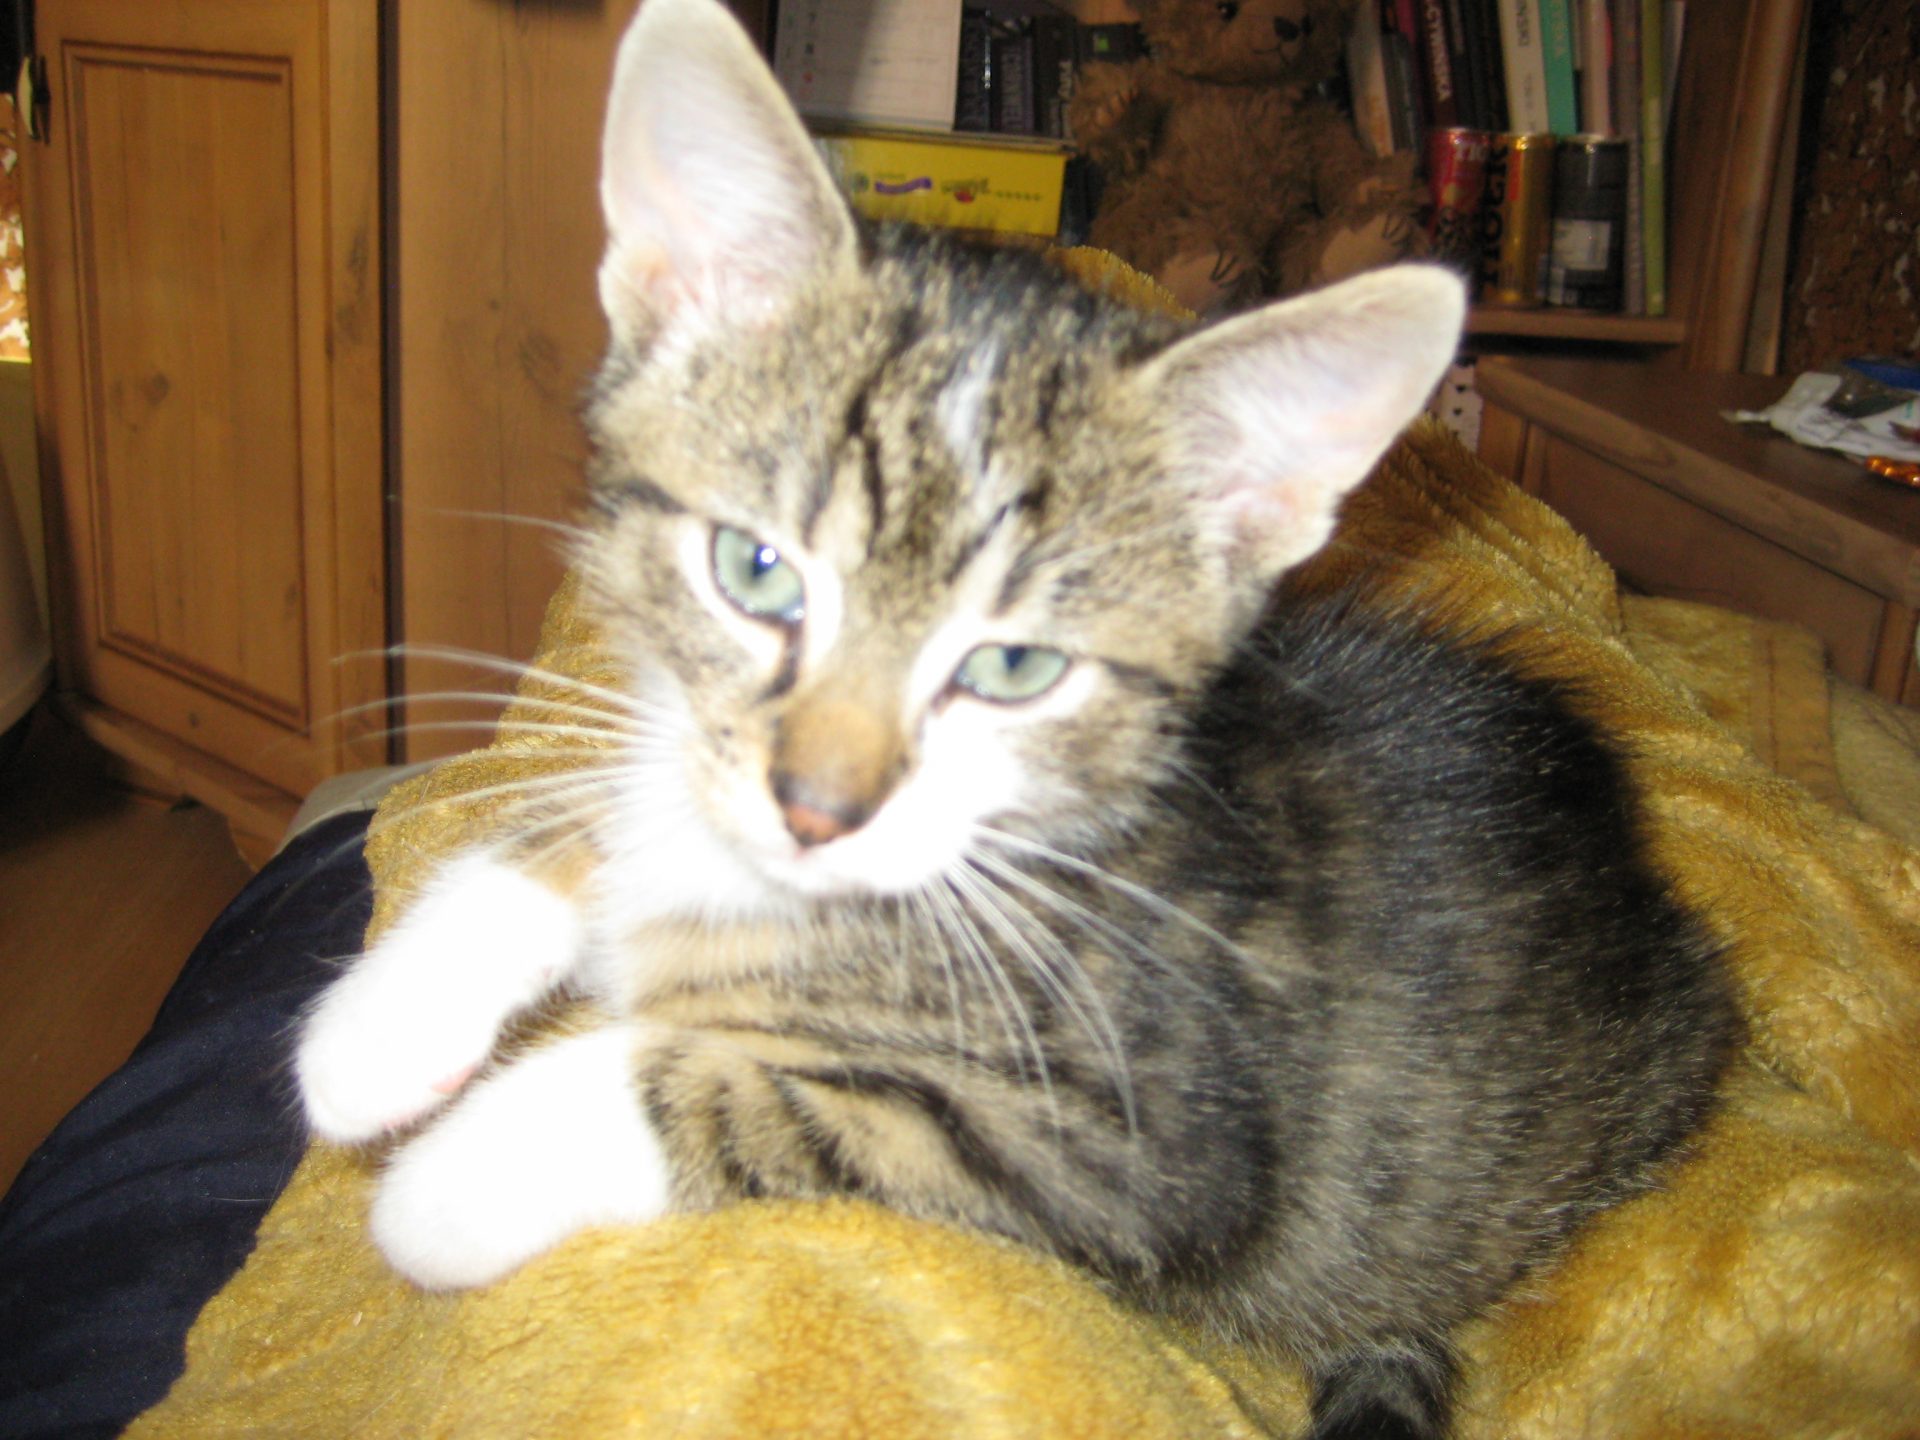 Zakapiorek i Bazylia, Elza i Alma to 1,5 miesięczne kociaki, które szukają domu